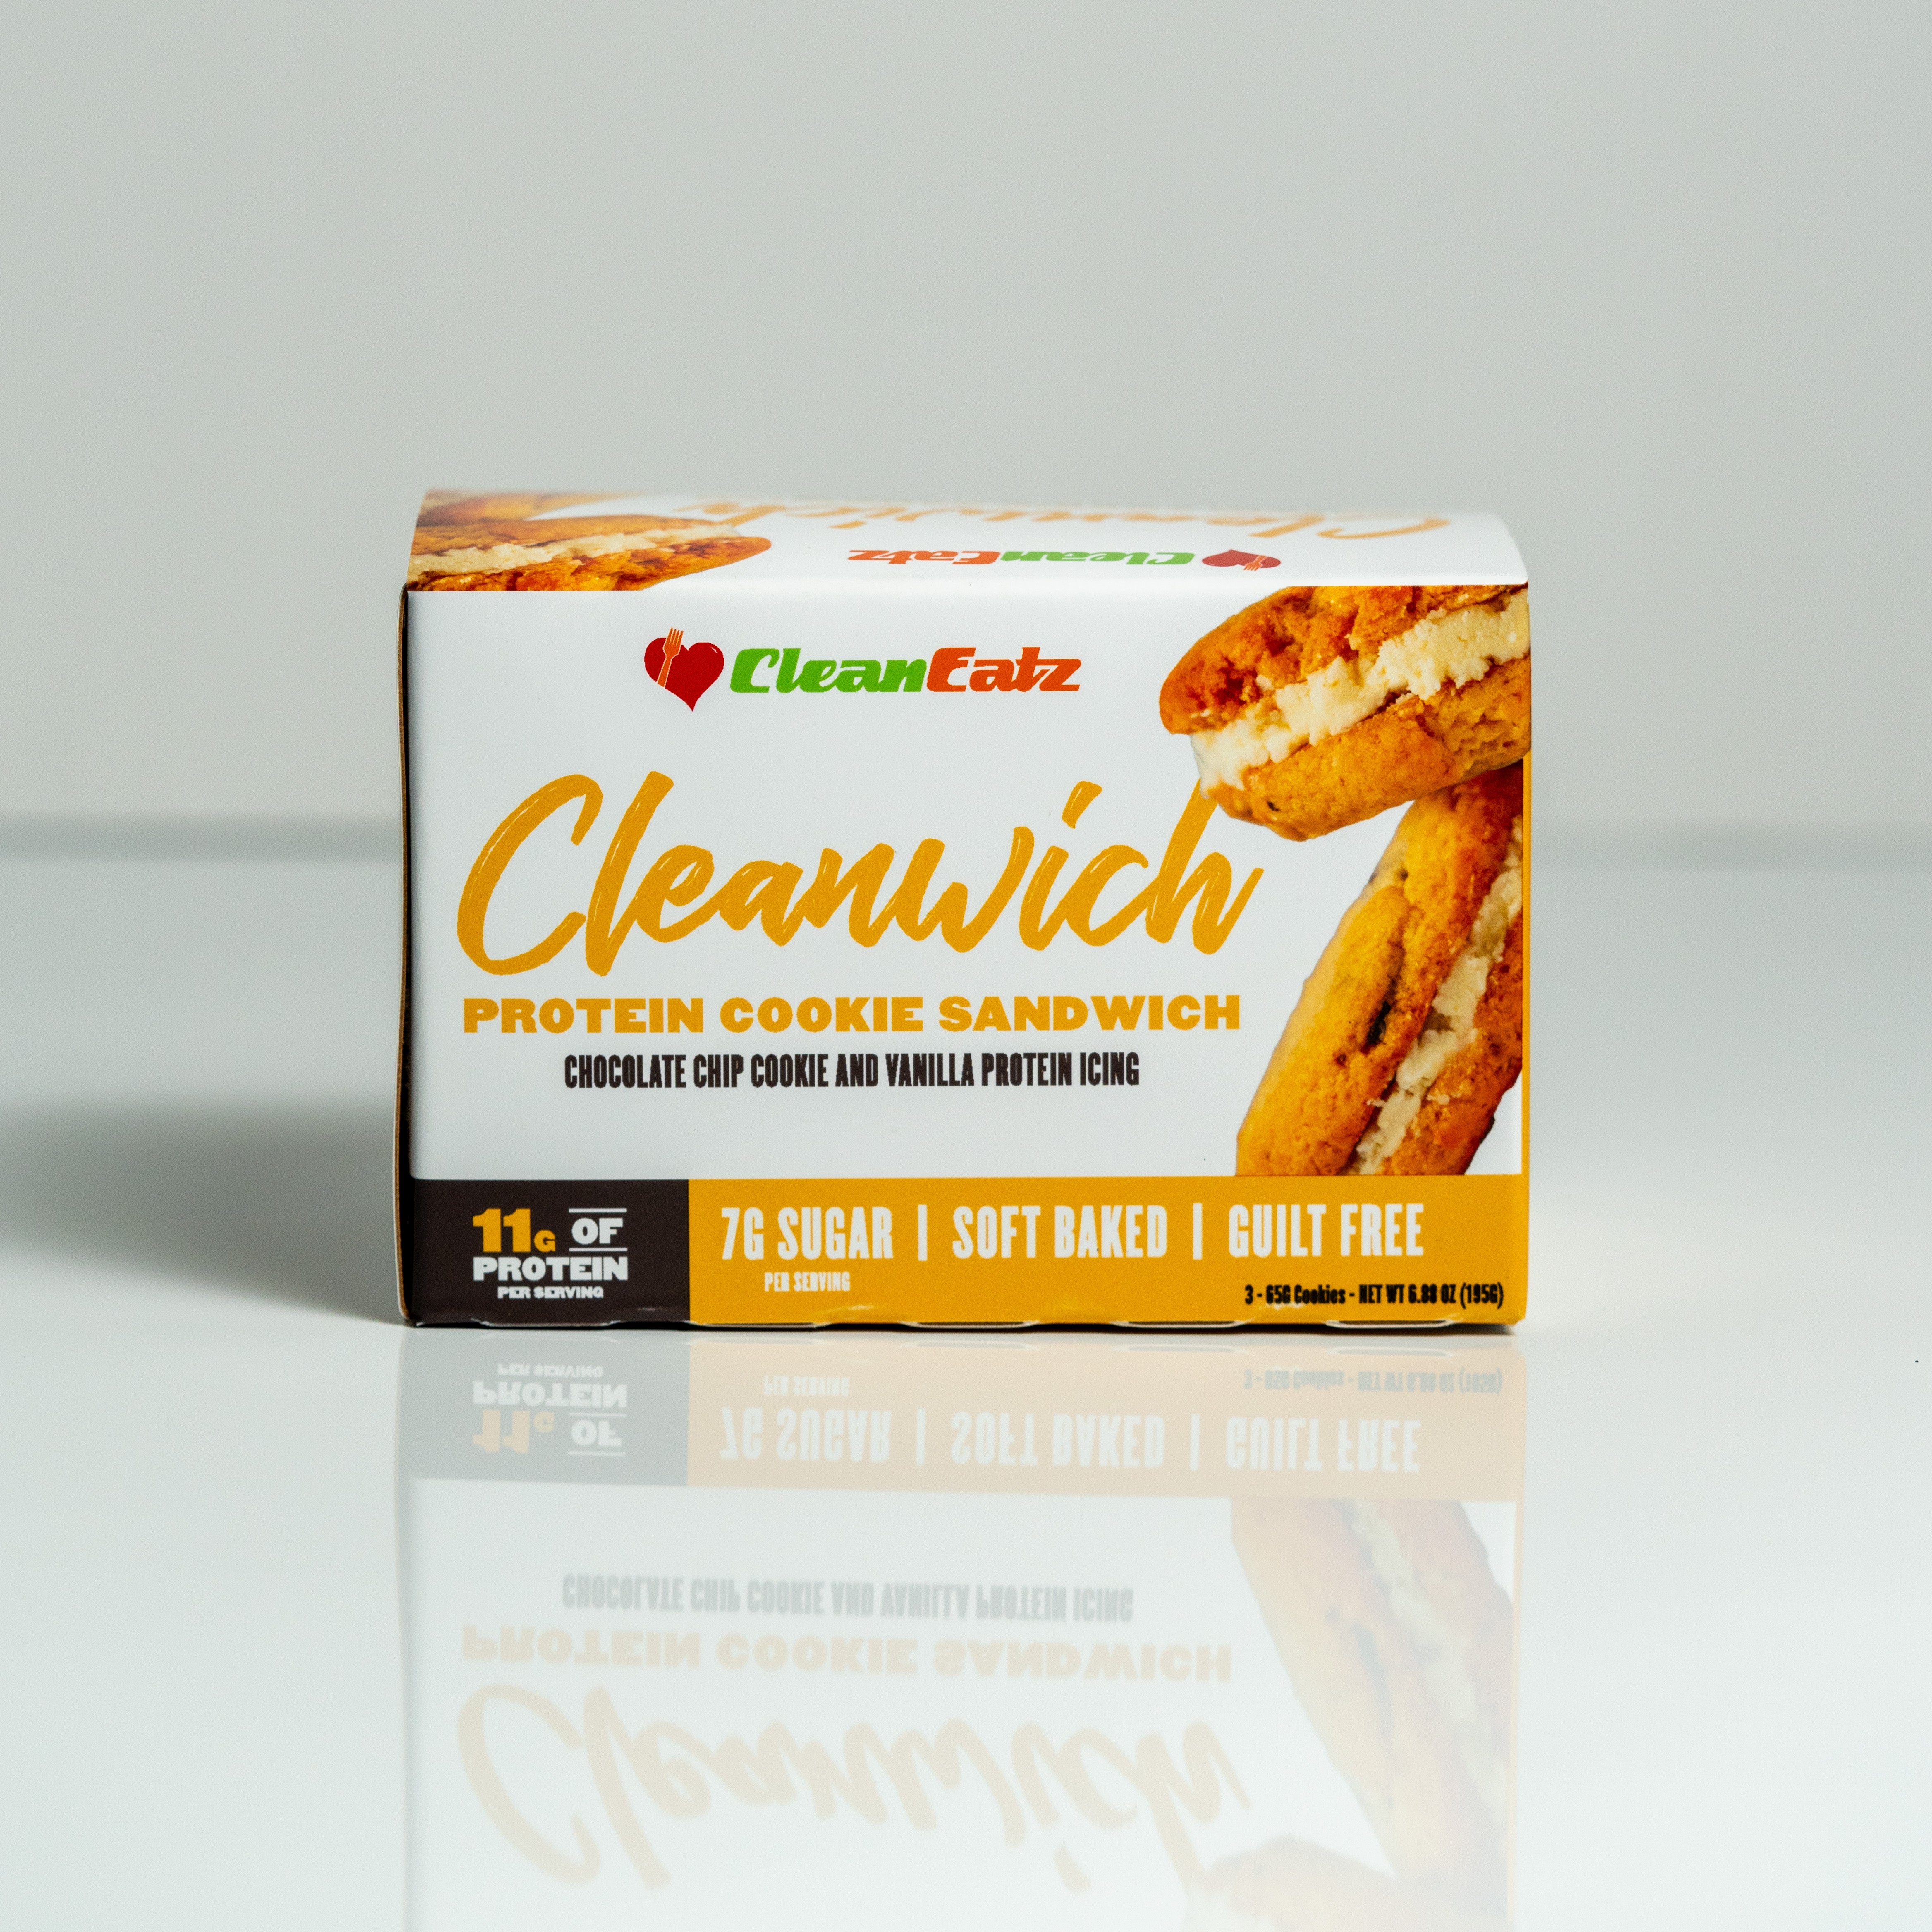 Clean Eatz Kitchen Protein Chocolate Chip Cookie Sandwich Chipwich Cleanwich